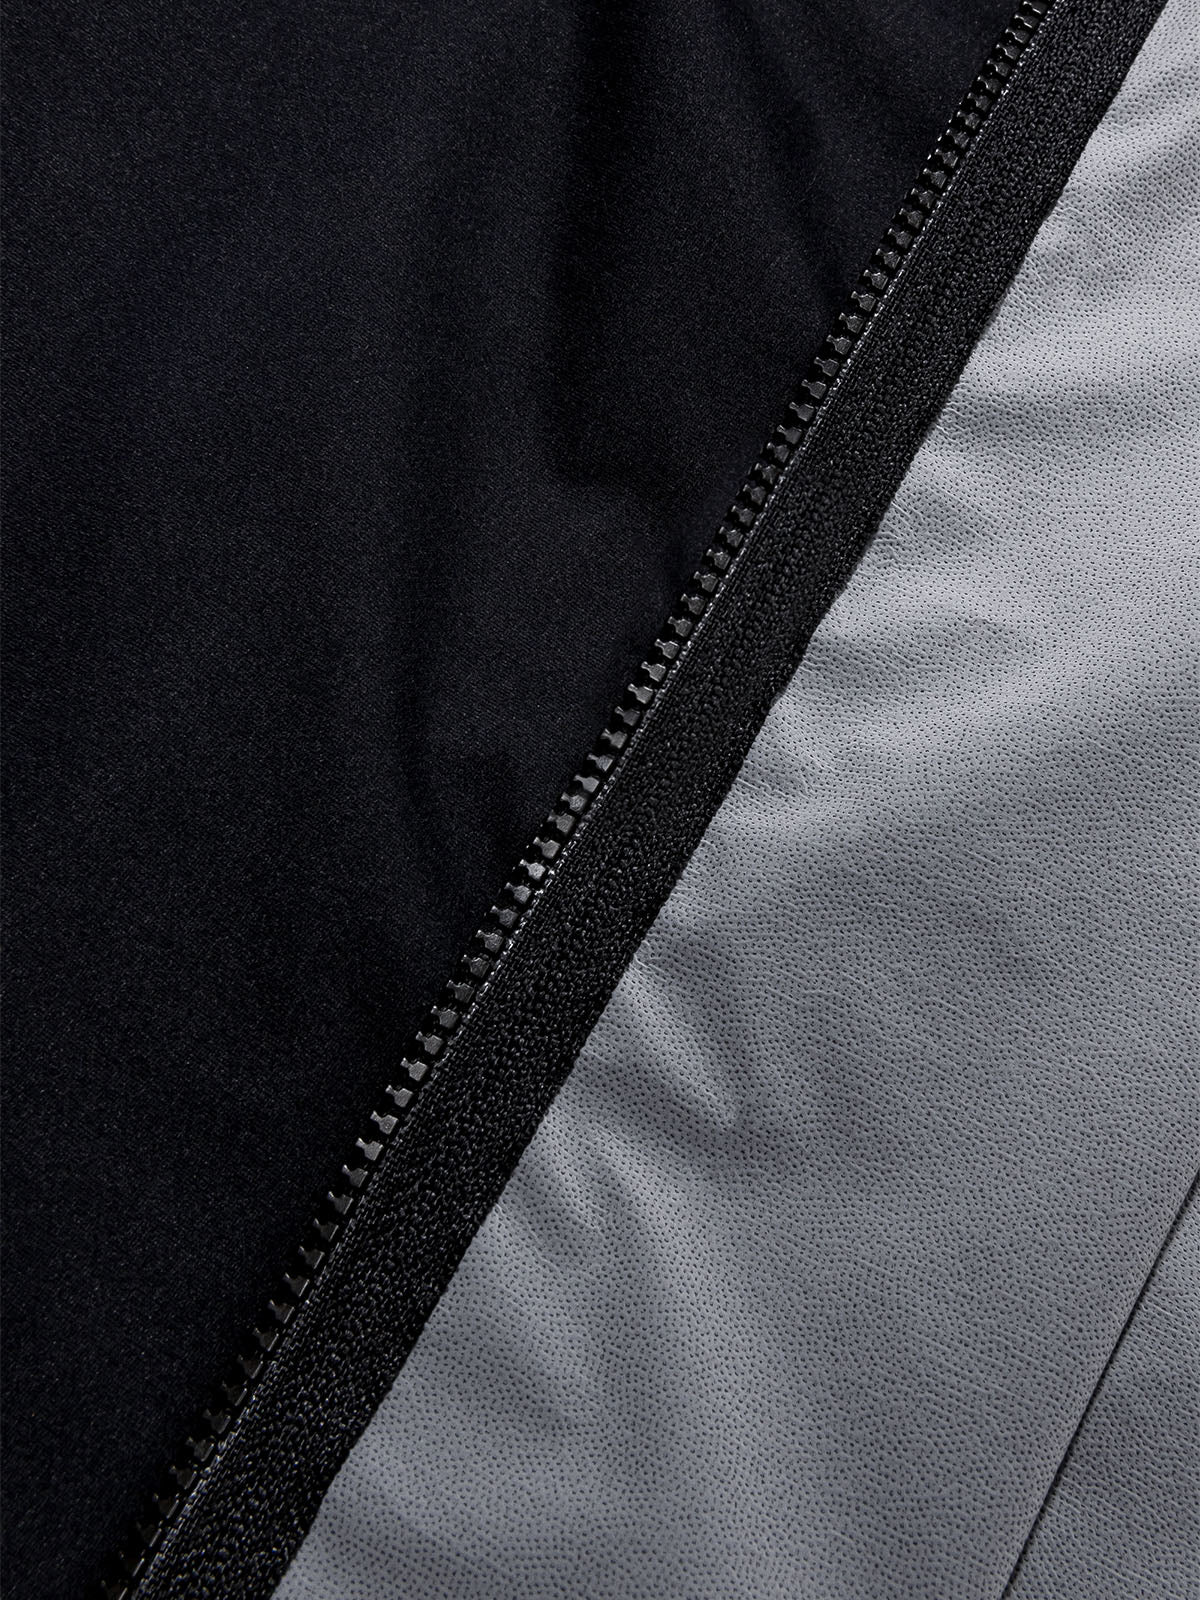 Altosphere Jacket von Mission Workshop - Wetterfeste Taschen & Technische Bekleidung - San Francisco & Los Angeles - Für die Ewigkeit gebaut - Garantiert